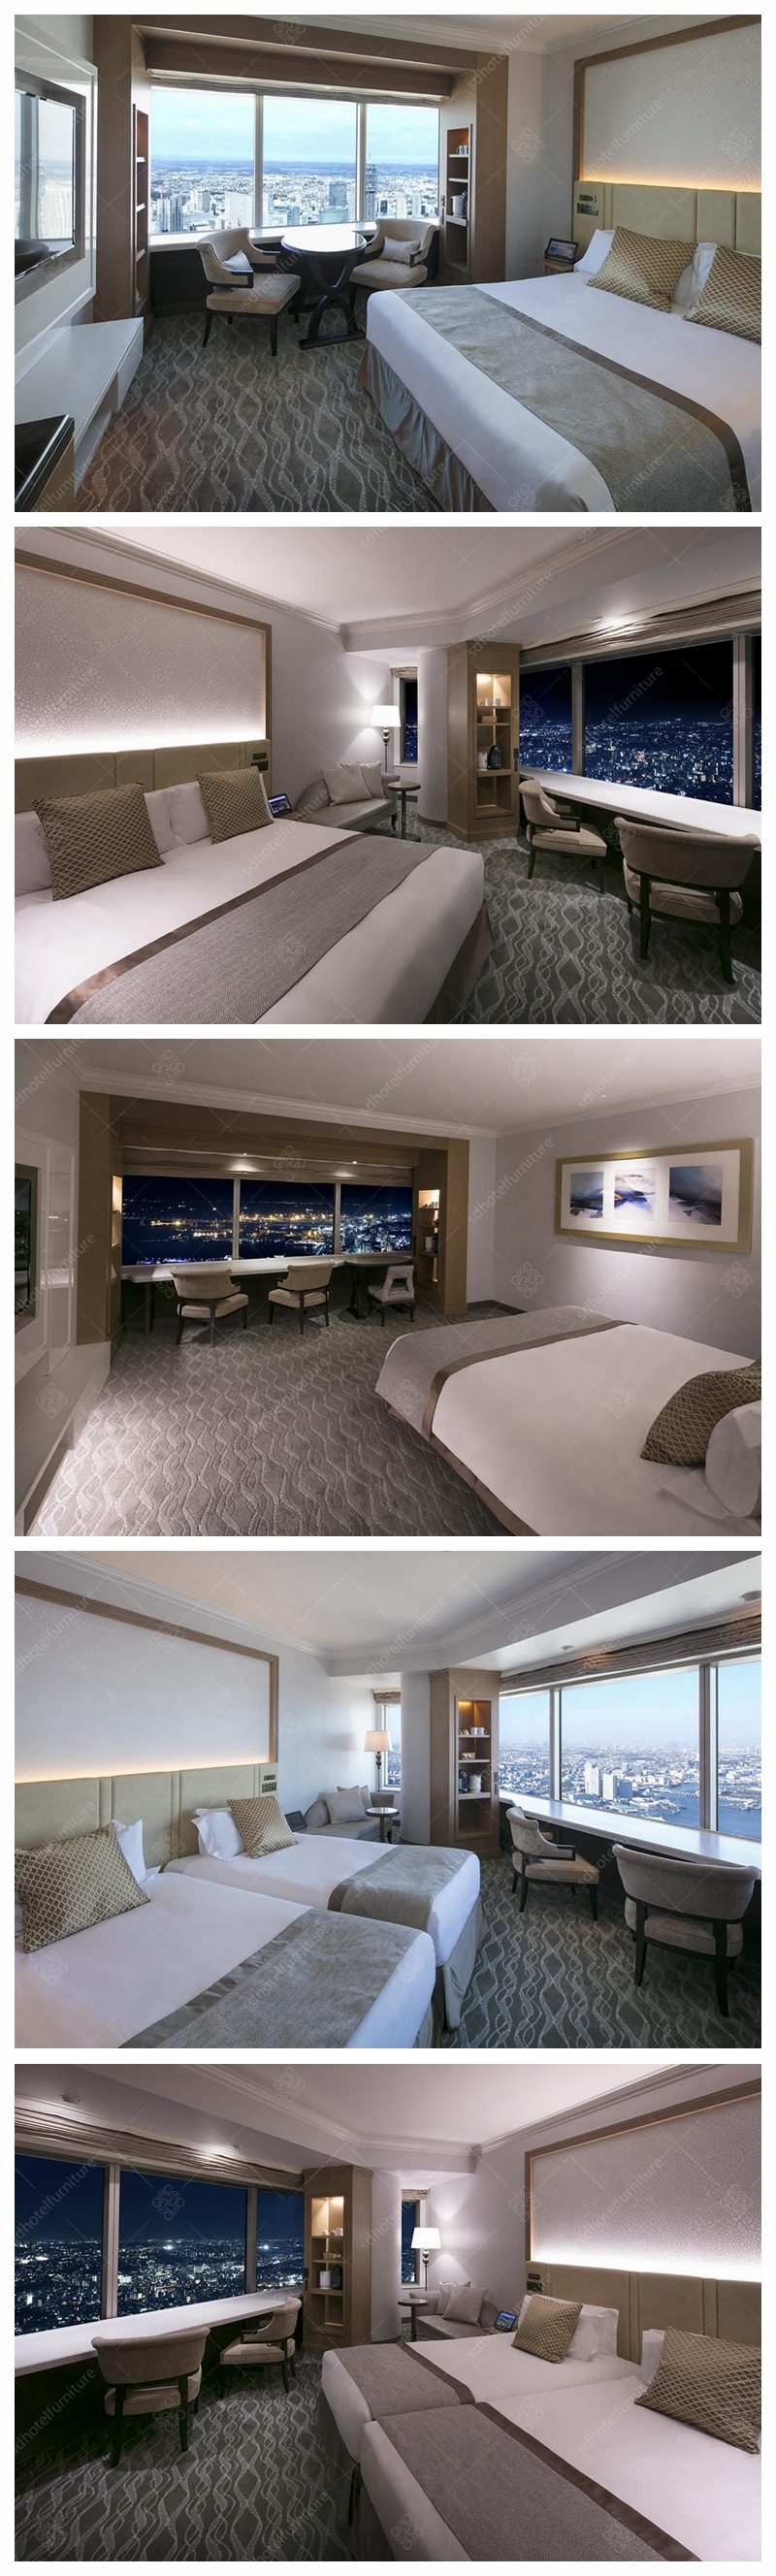 Artistic Design Modern 5 Stars Hotel Room Furniture Sets